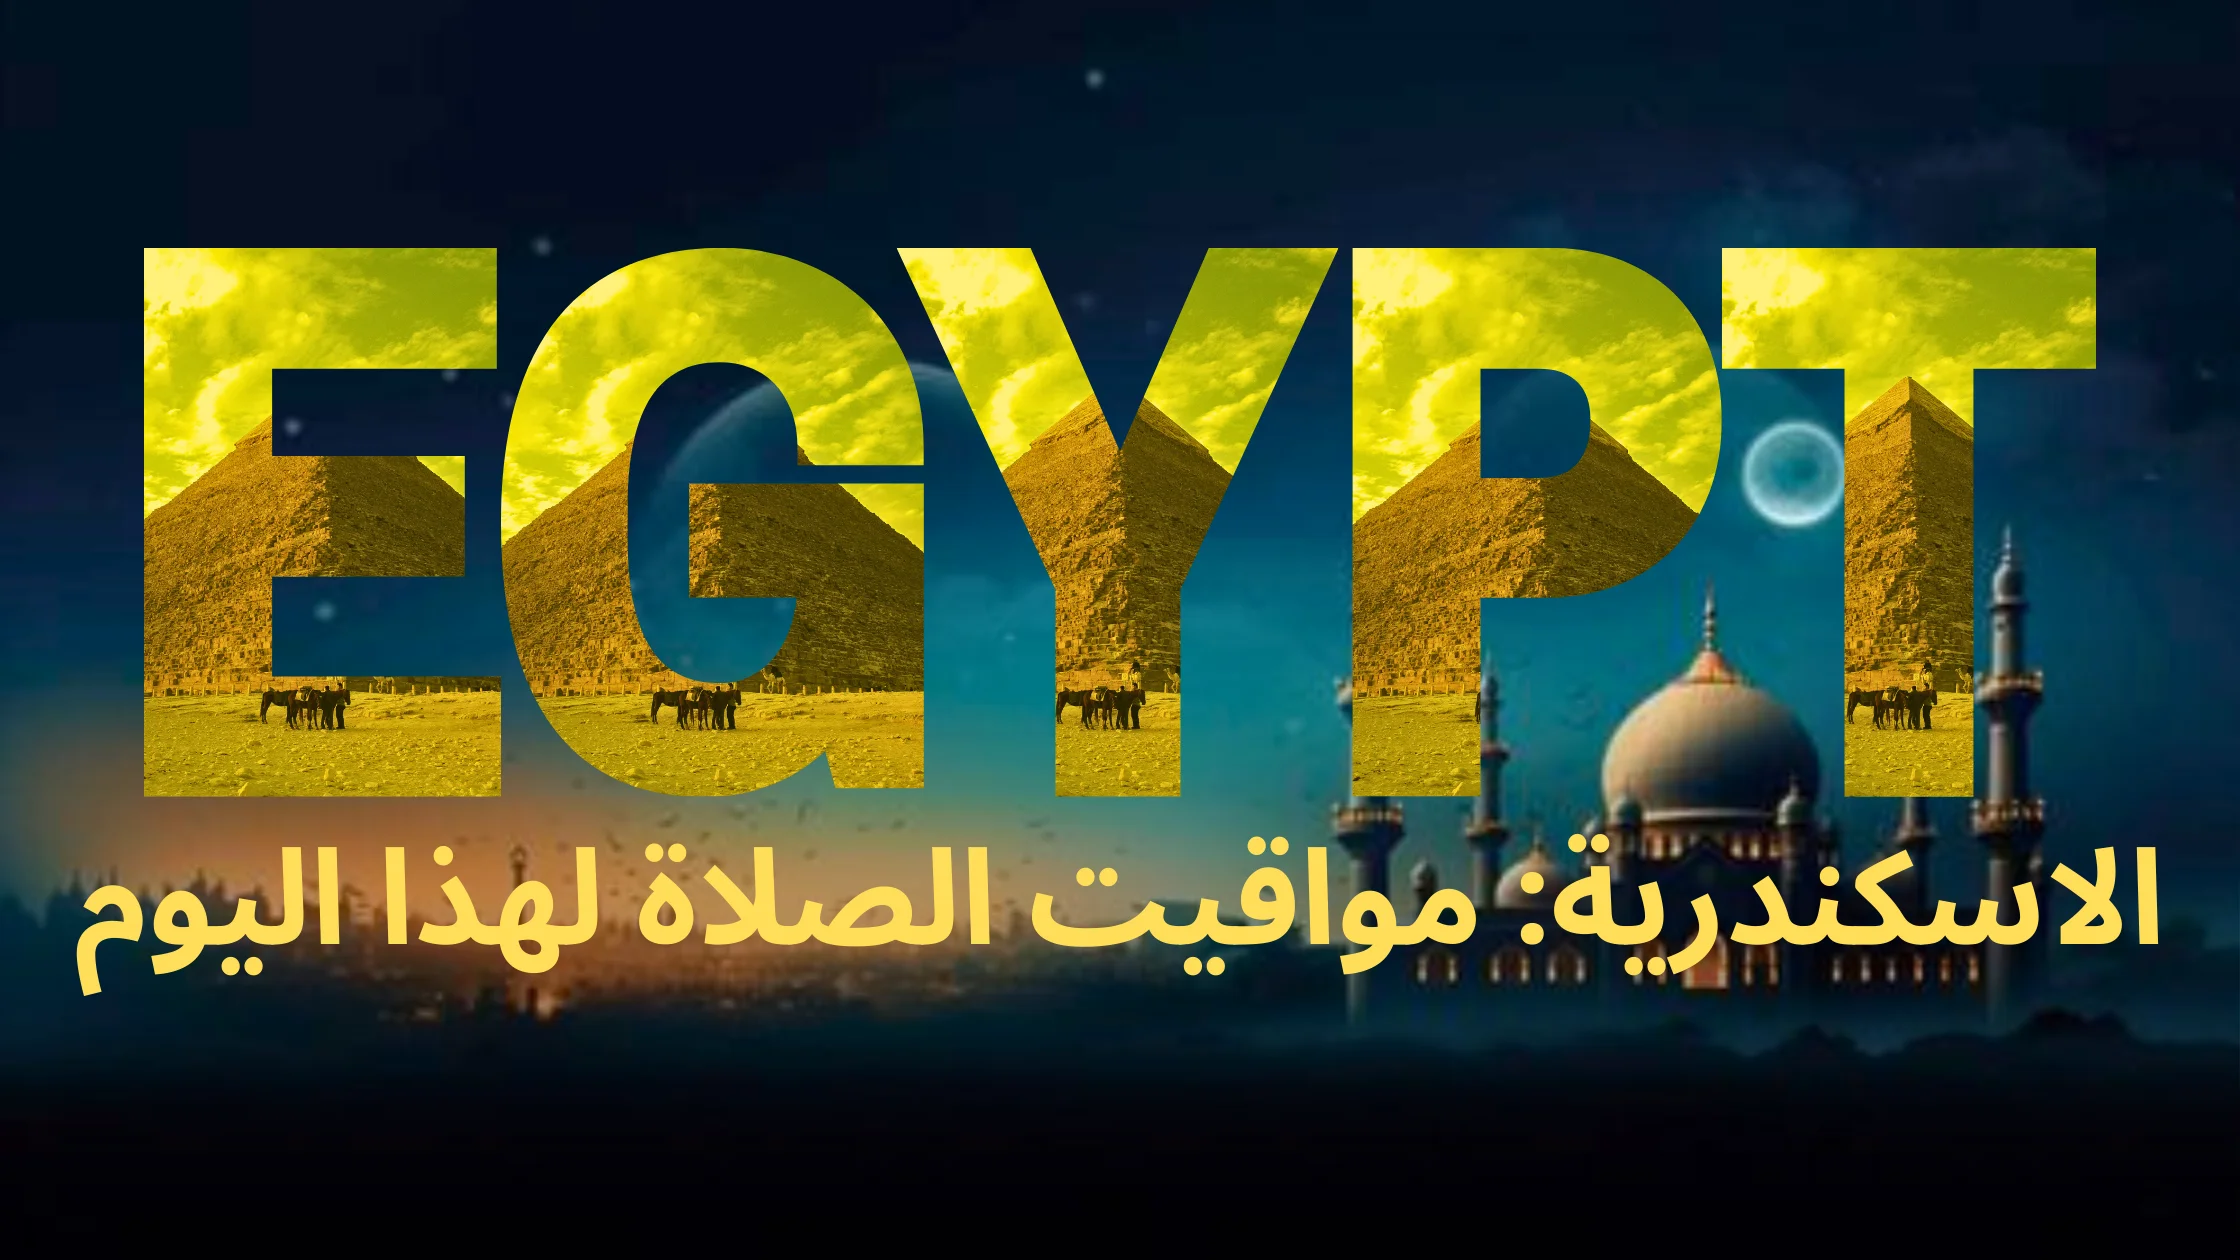 نص مكتوب بالخط العربي "مصر" متبوعًا بالنص العربي "الاسكندرية: مواقيت الصلاة لهذا اليوم"